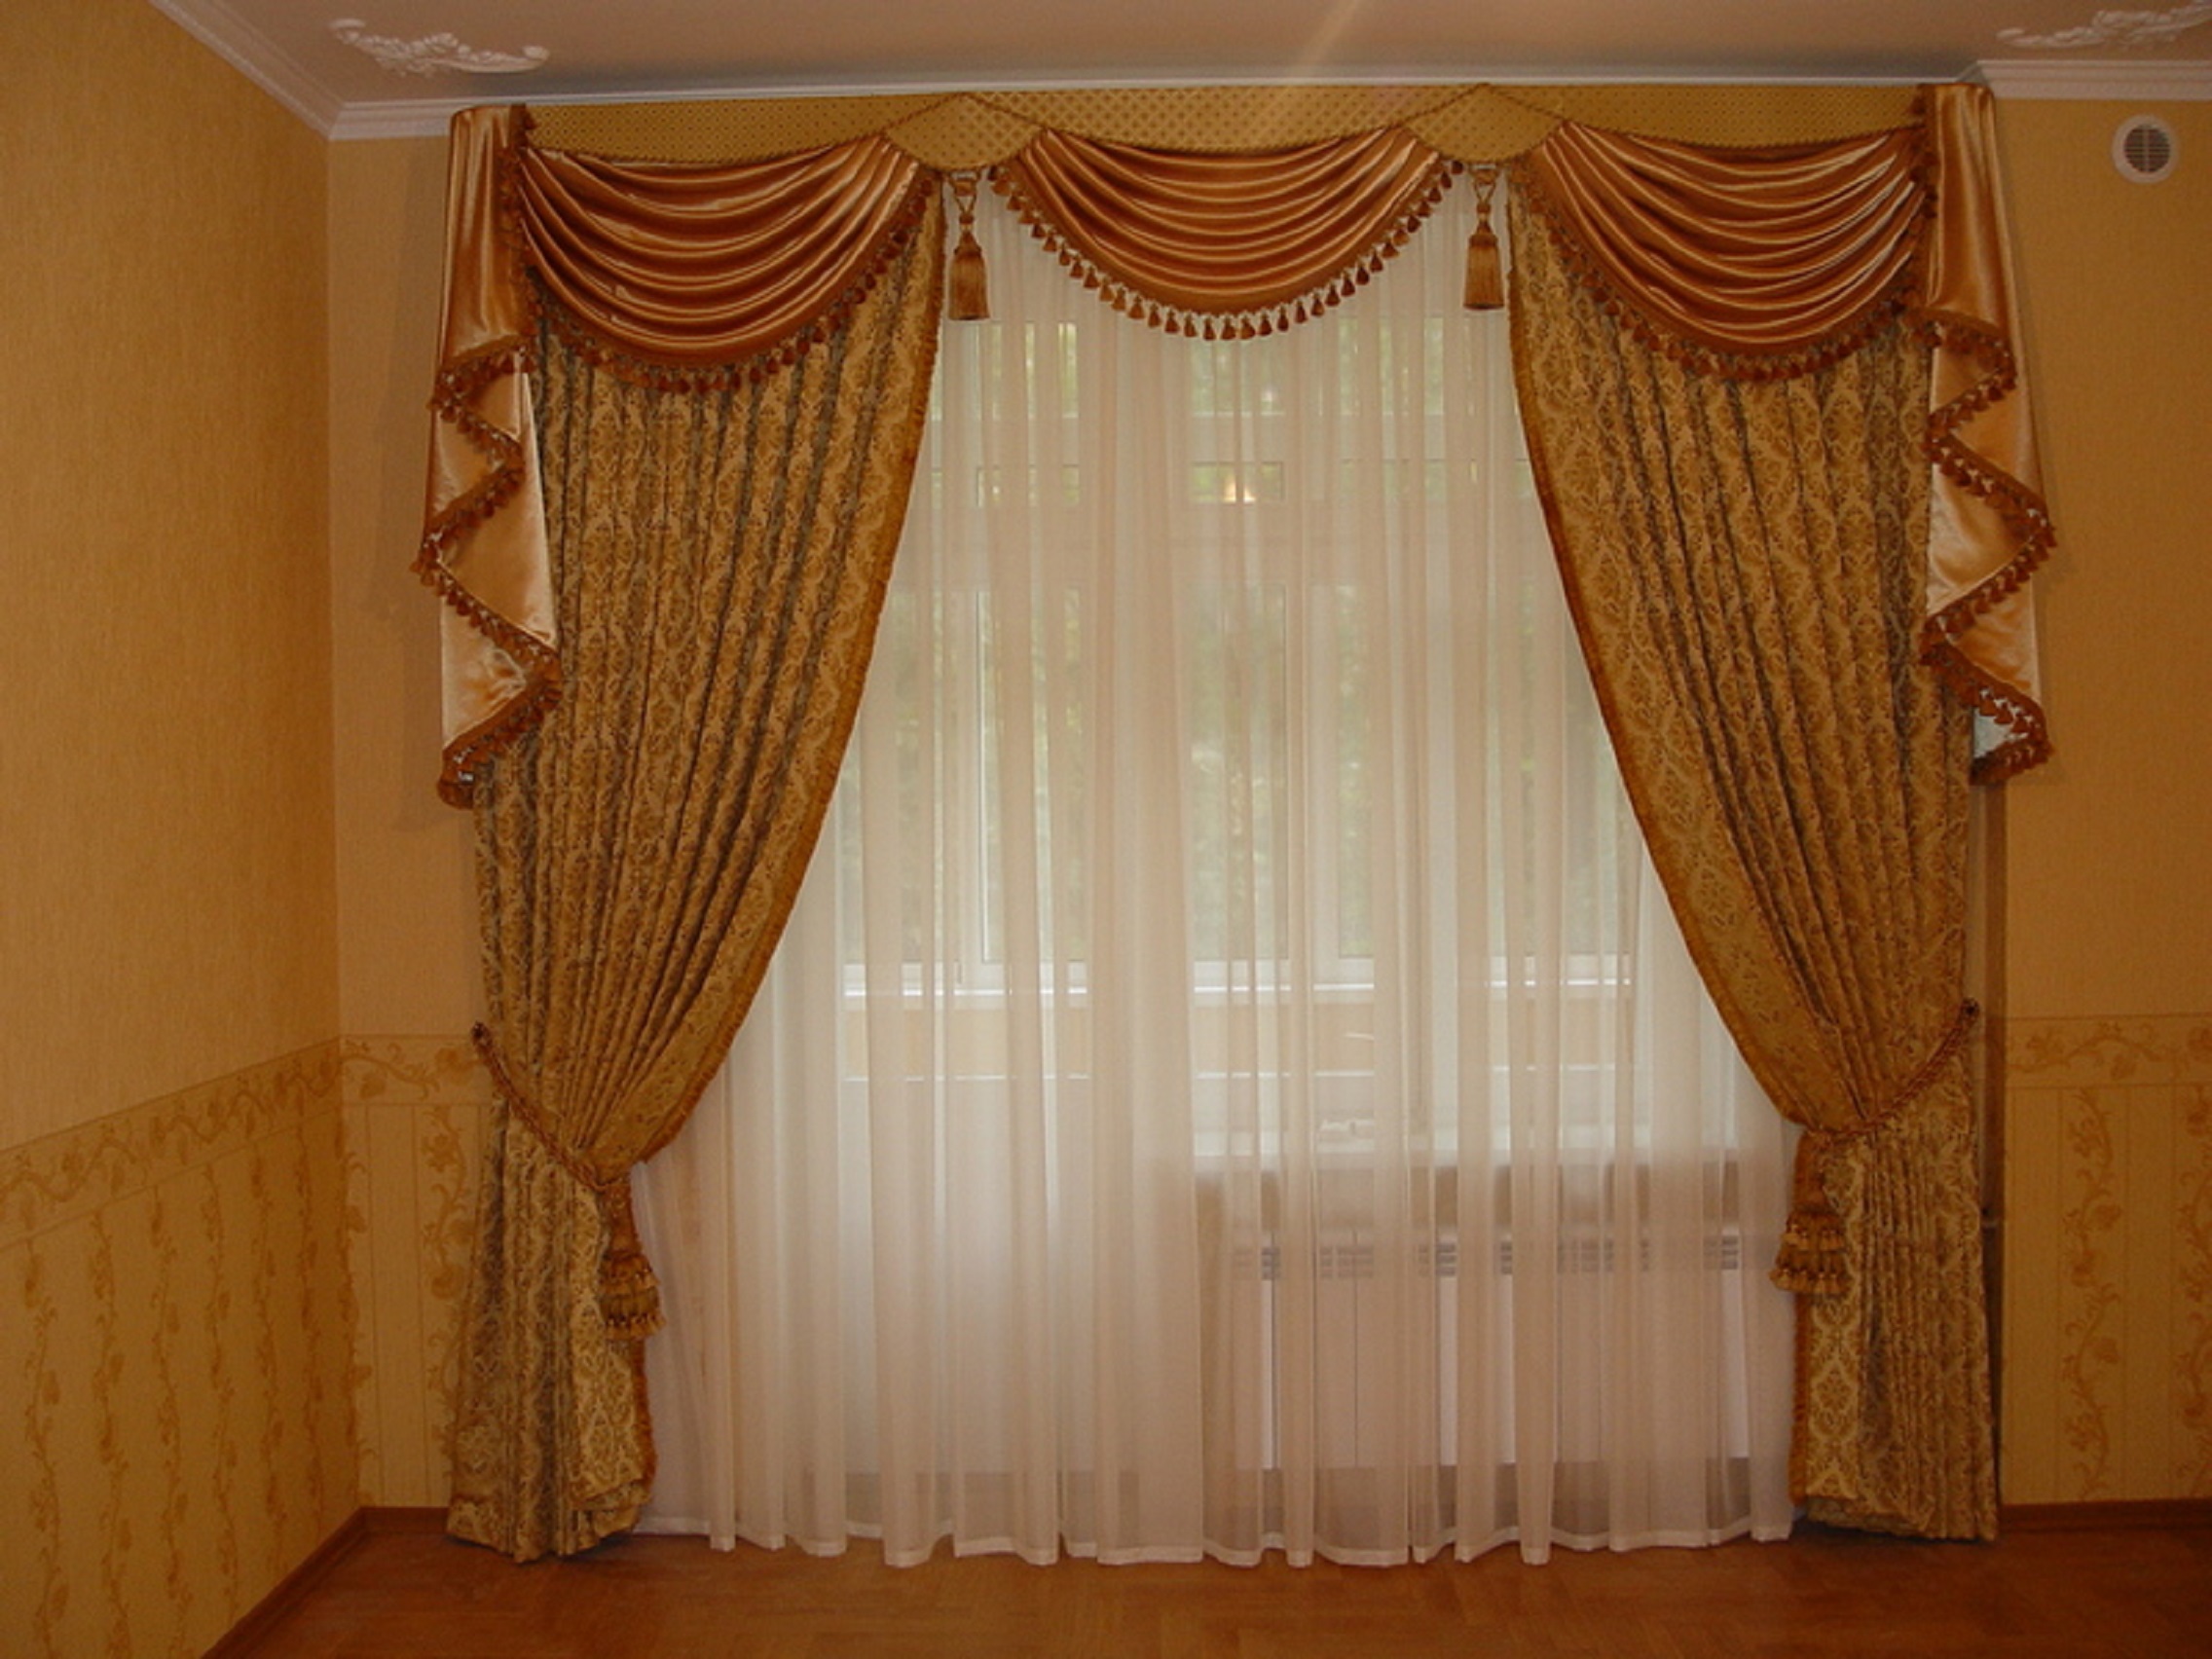 Шторы в зал - 150 фото дизайна штор для зала в квартире и доме.